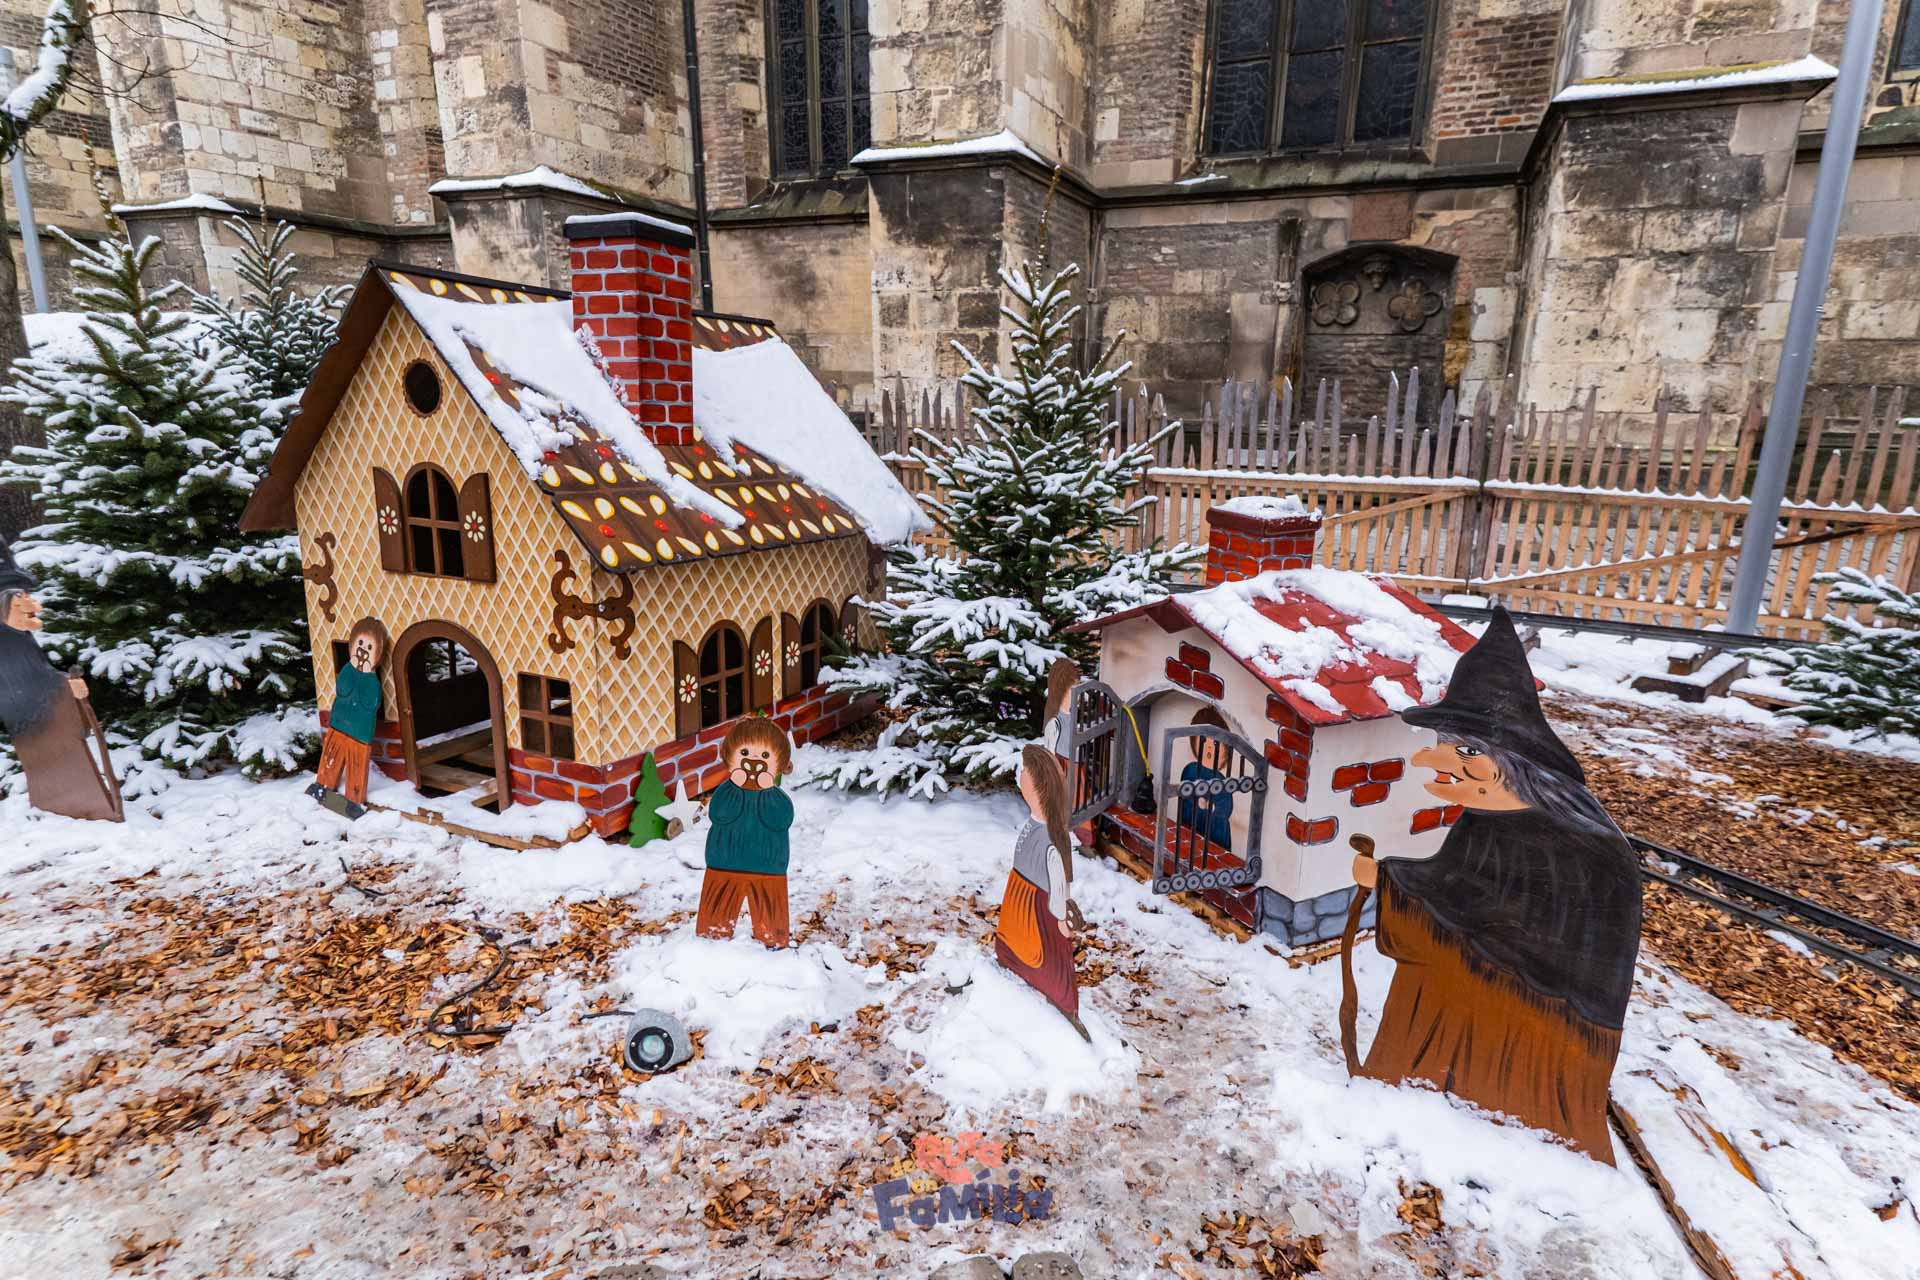 Ulm en Navidad, el mercado navideño alemán dedicado a los cuentos